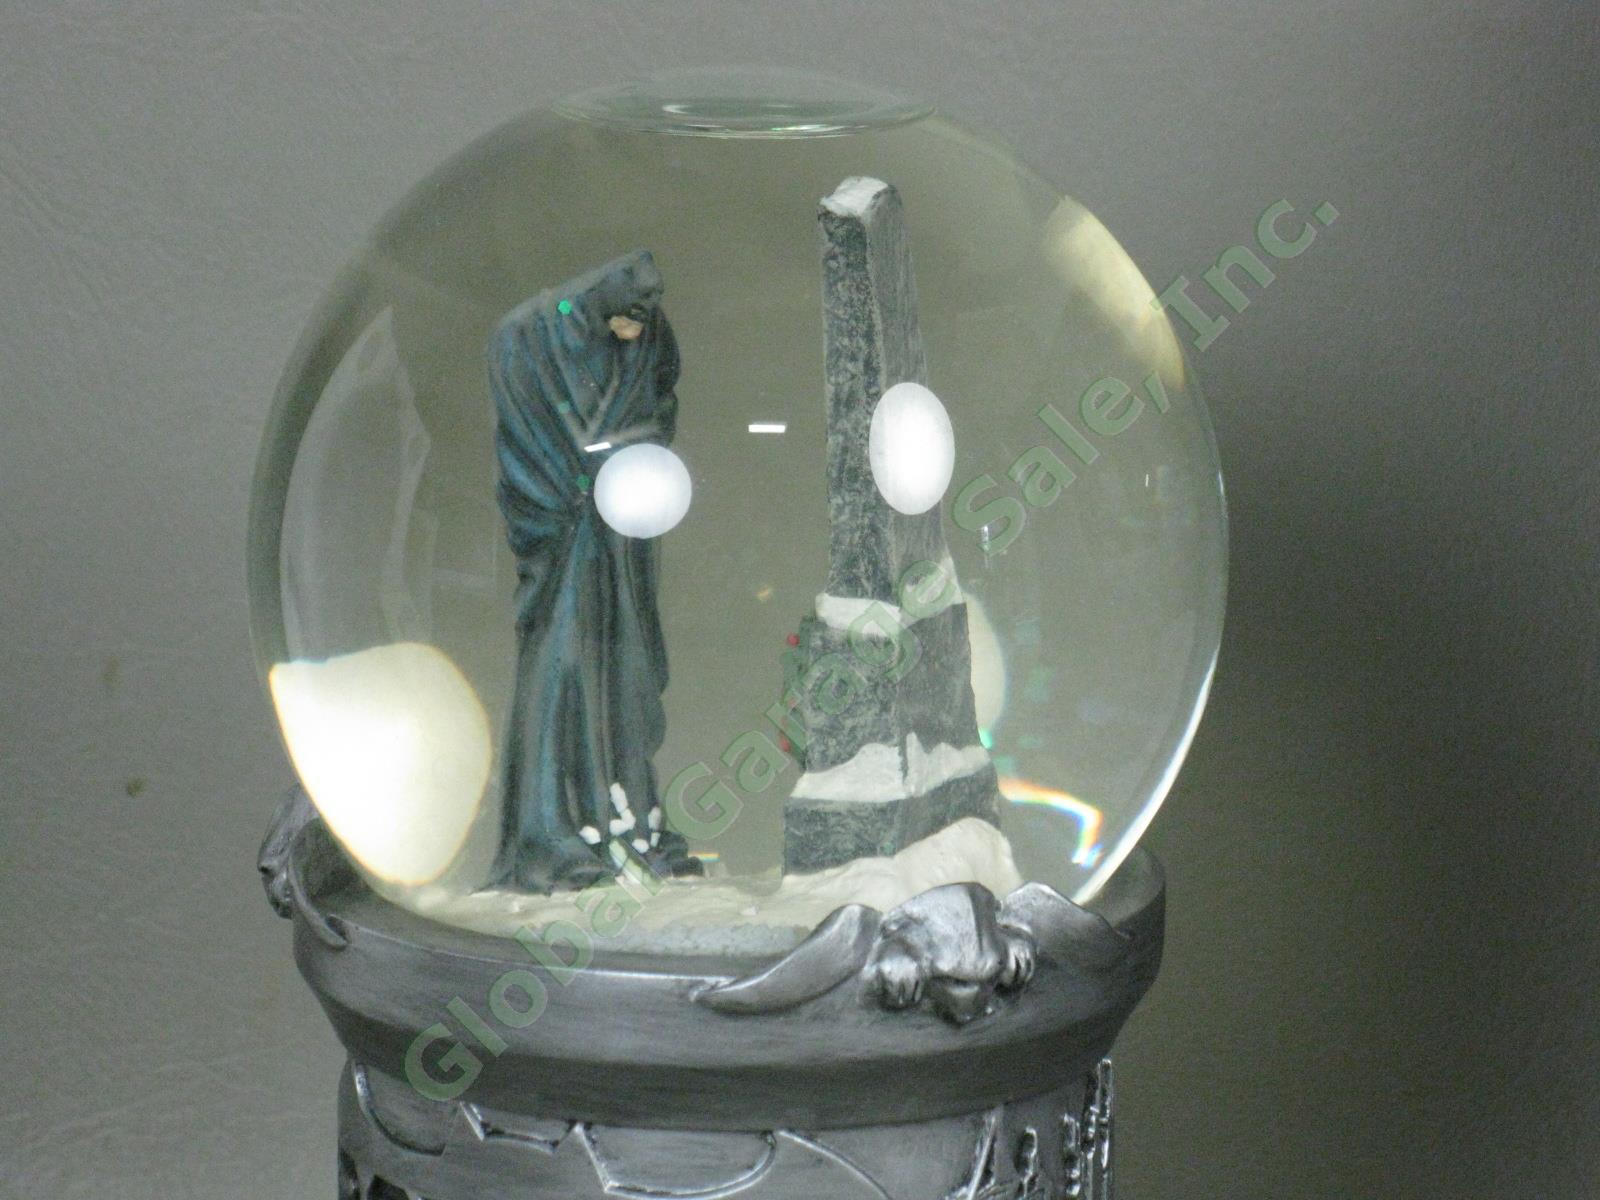 NIB 1999 DC Direct Ltd Ed Batman Dark Winters Knight Porcelain Snow Globe w/COA 2